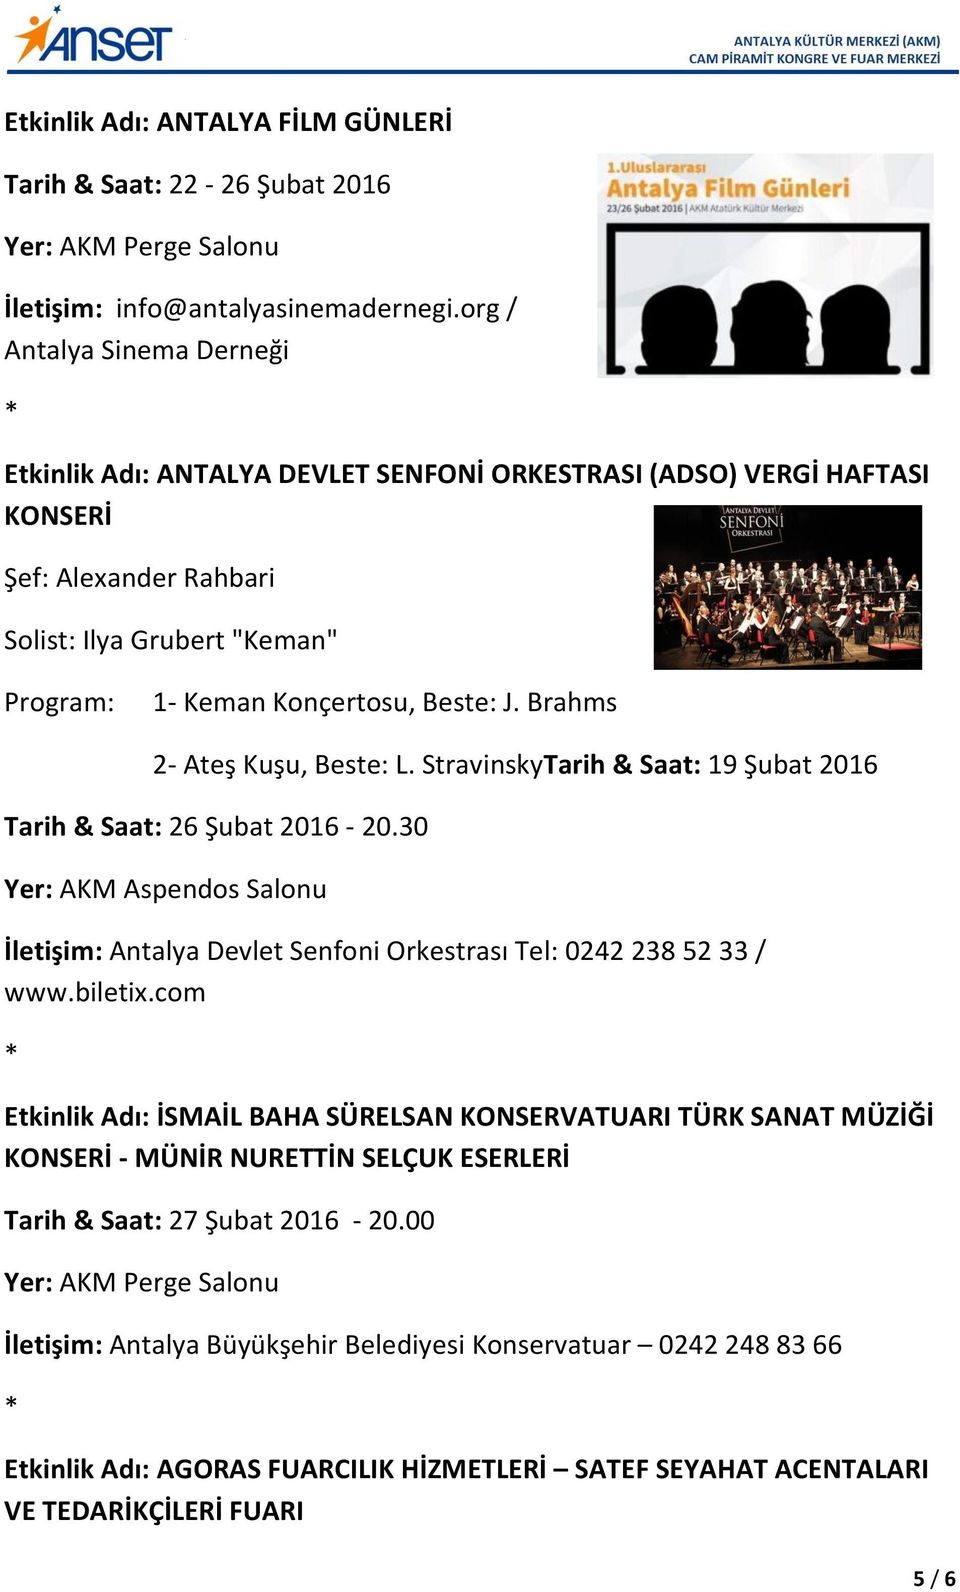 Brahms 2- Ateş Kuşu, Beste: L. StravinskyTarih & Saat: 19 Şubat 2016 Tarih & Saat: 26 Şubat 2016-20.30 İletişim: Antalya Devlet Senfoni Orkestrası Tel: 0242 238 52 33 / www.biletix.